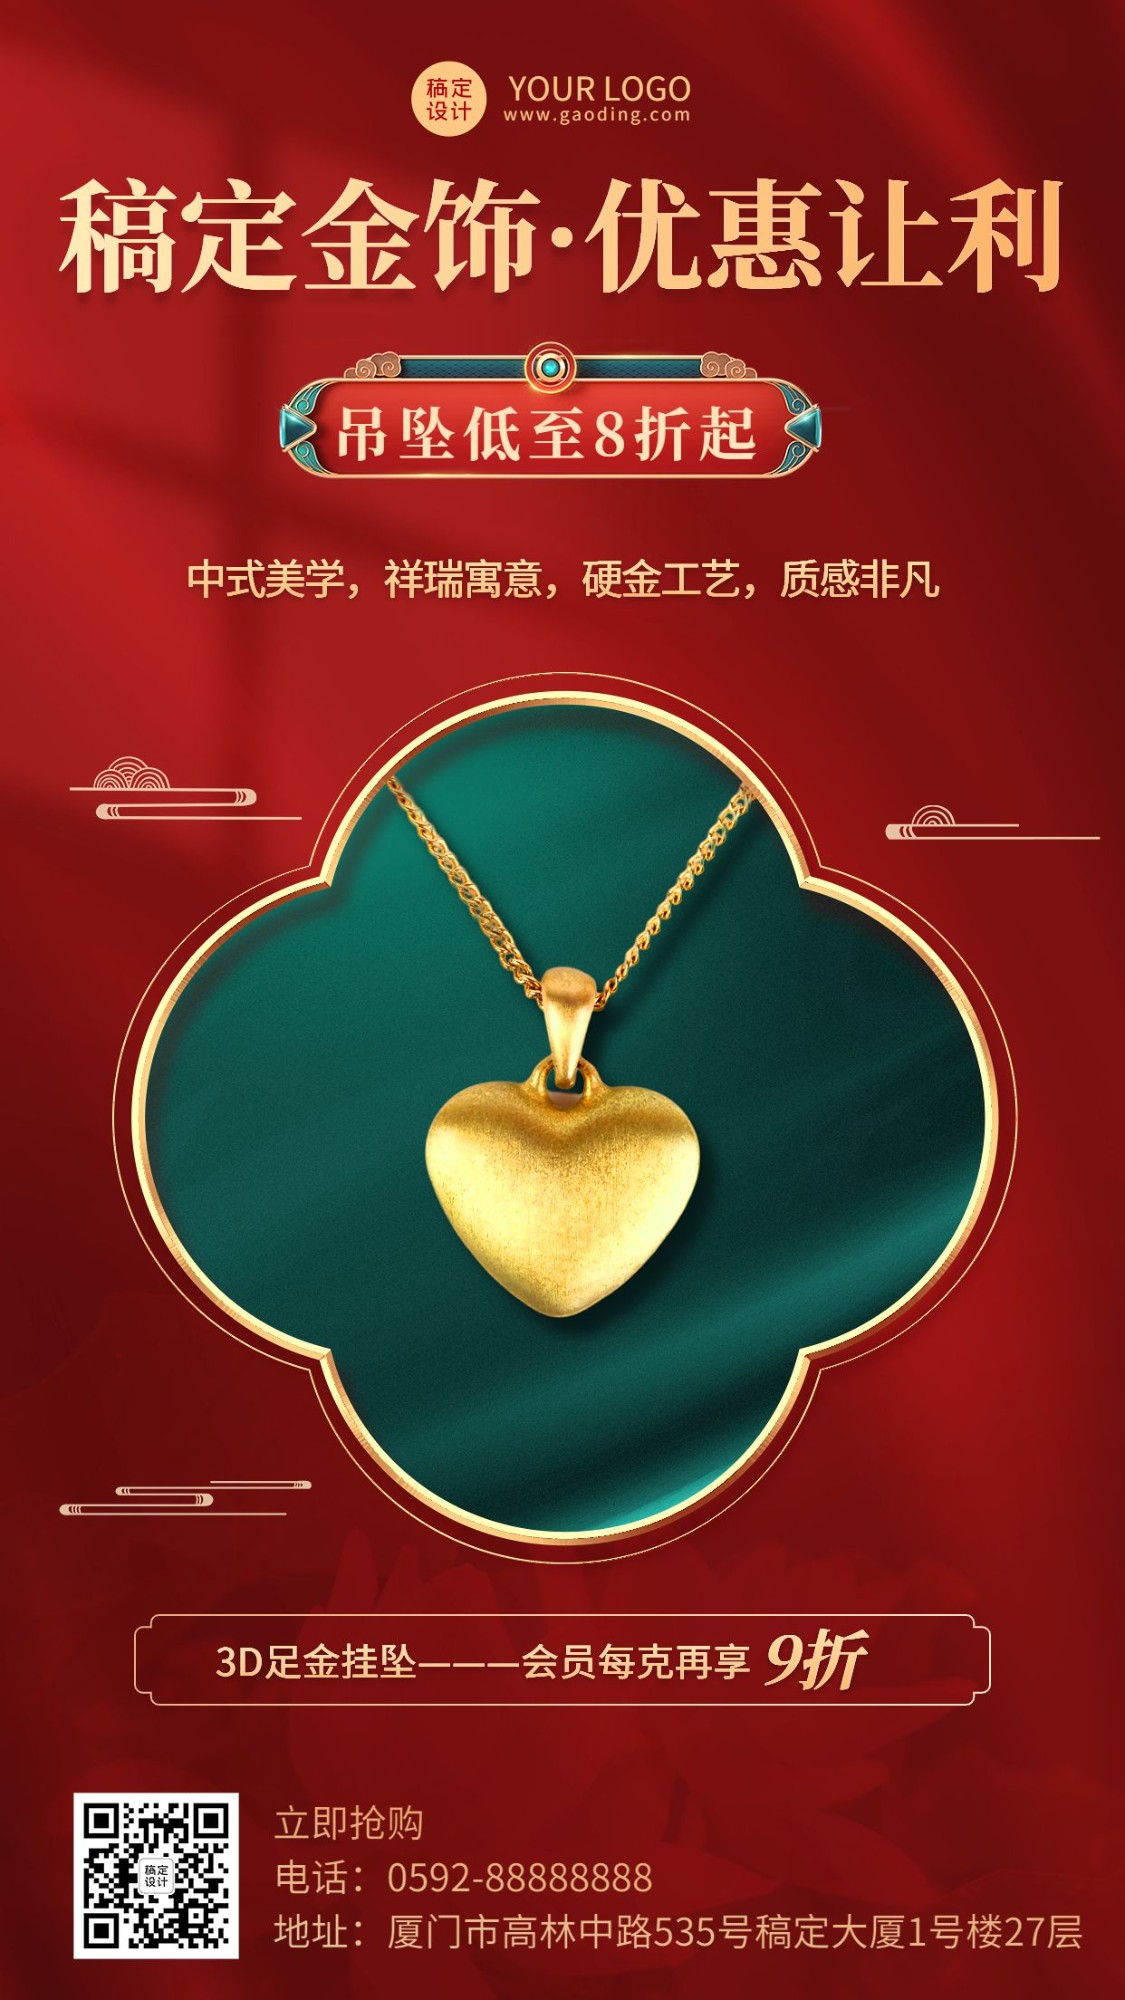 珠宝首饰产品营销展示奢华中国风手机海报预览效果